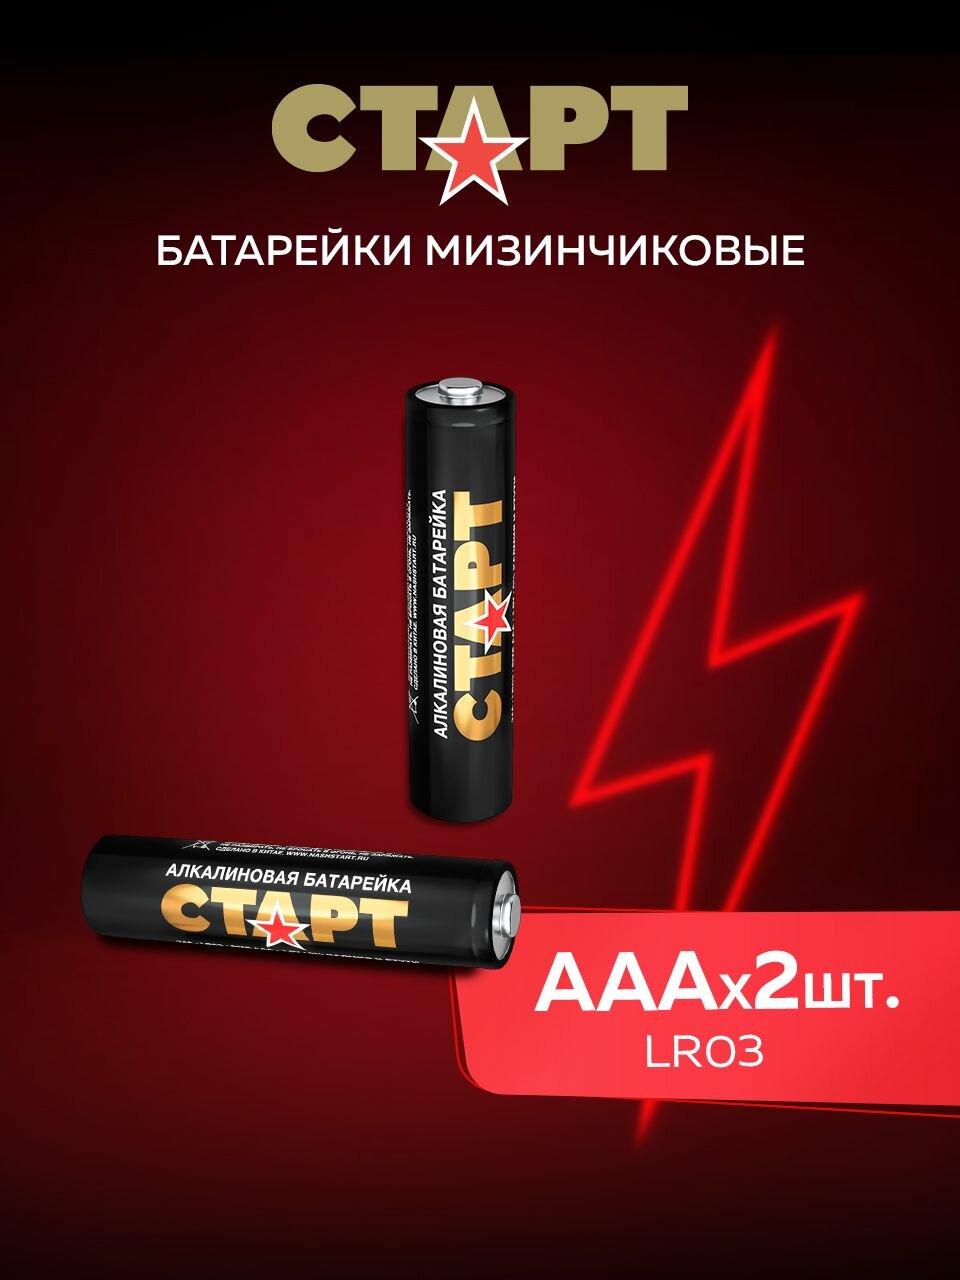 Батарейки ААА старт 2штуки, мизинчиковые 1,5v алкалиновые